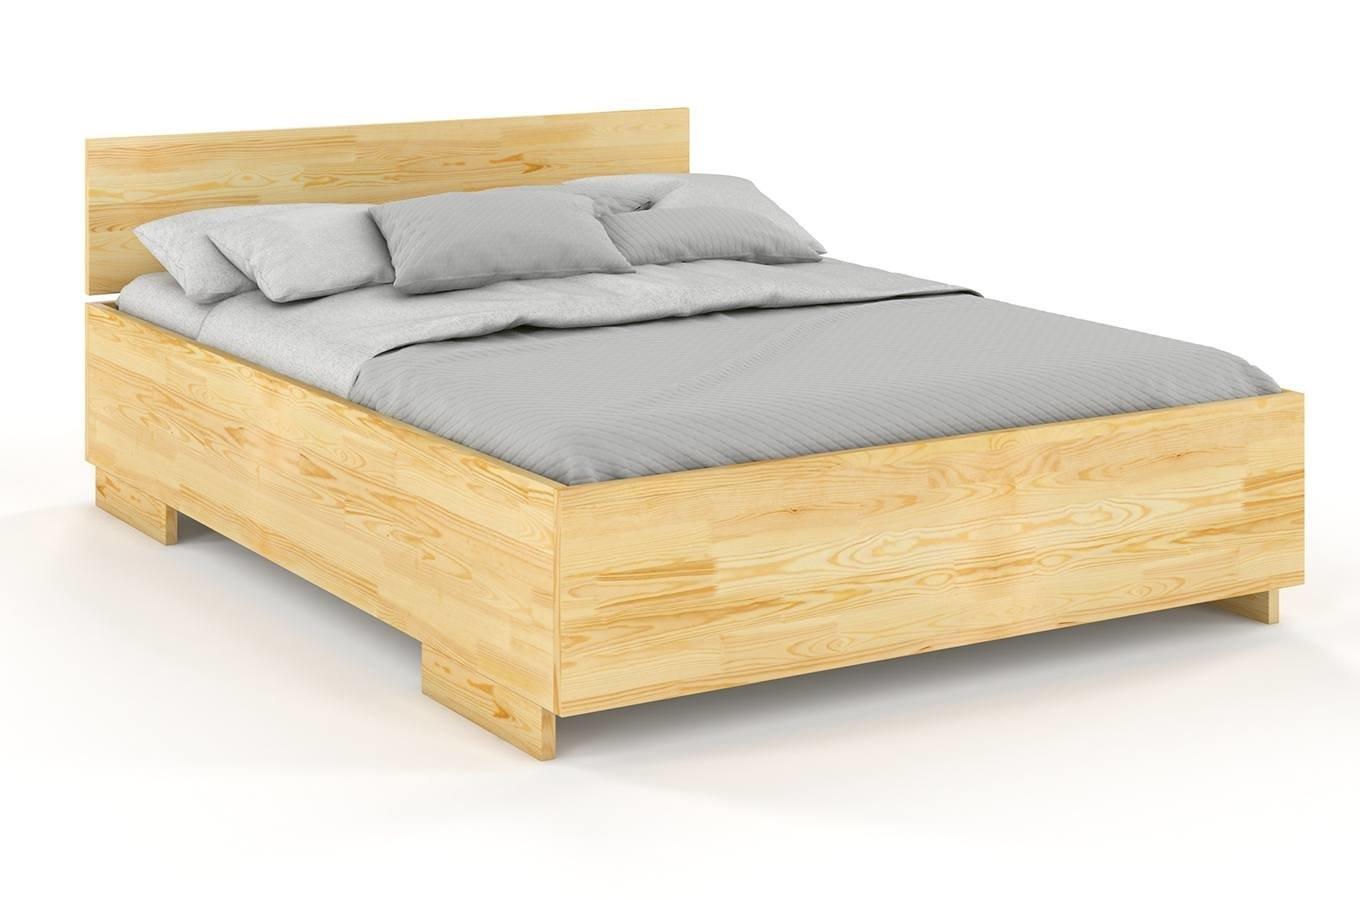 Łóżko drewniane sosnowe Visby Bergman High&Long / 180x220 cm, kolor naturalny